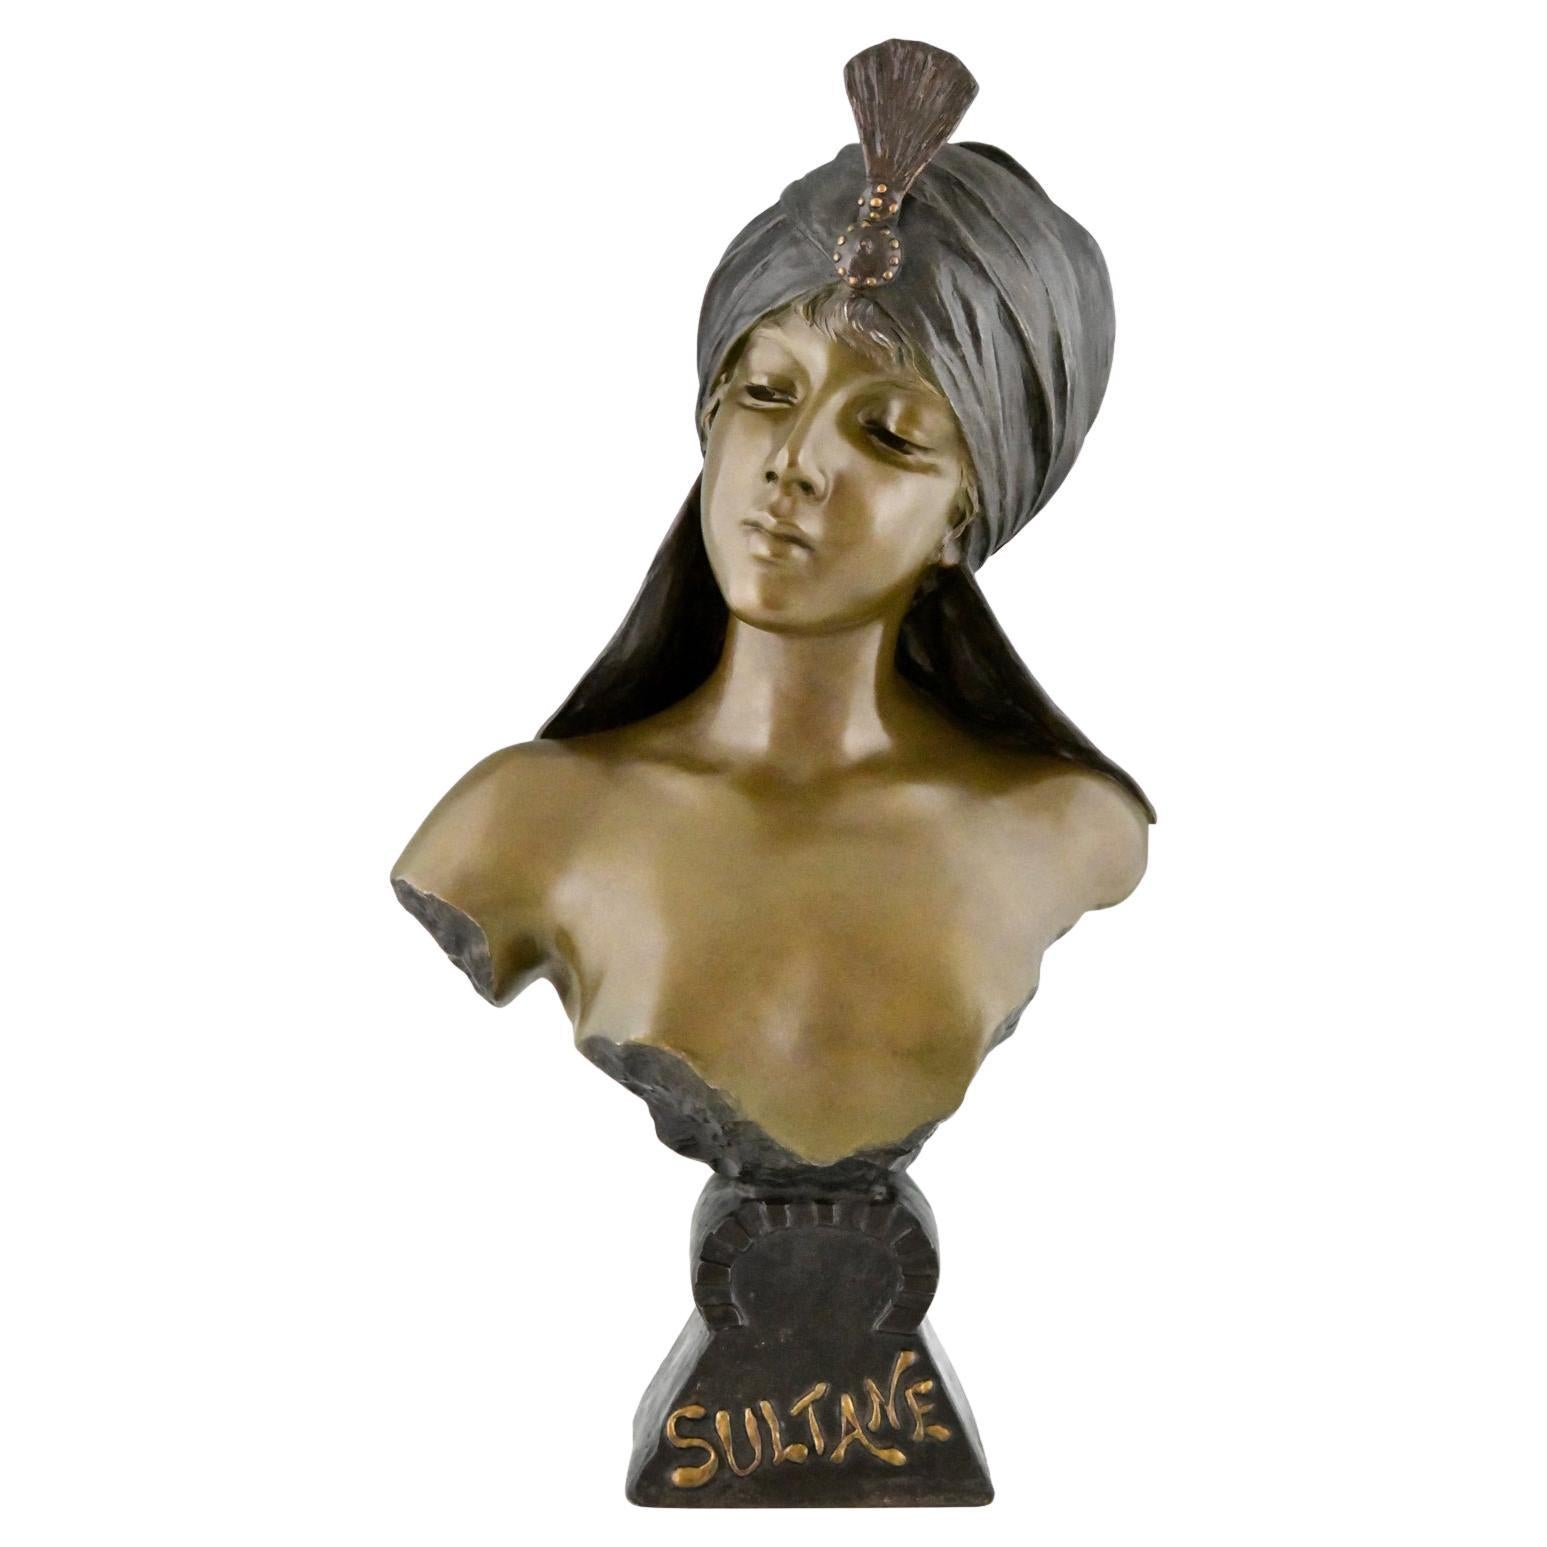 Art Nouveau bust of a woman Sultane signed by Emmanuel Villanis 1890